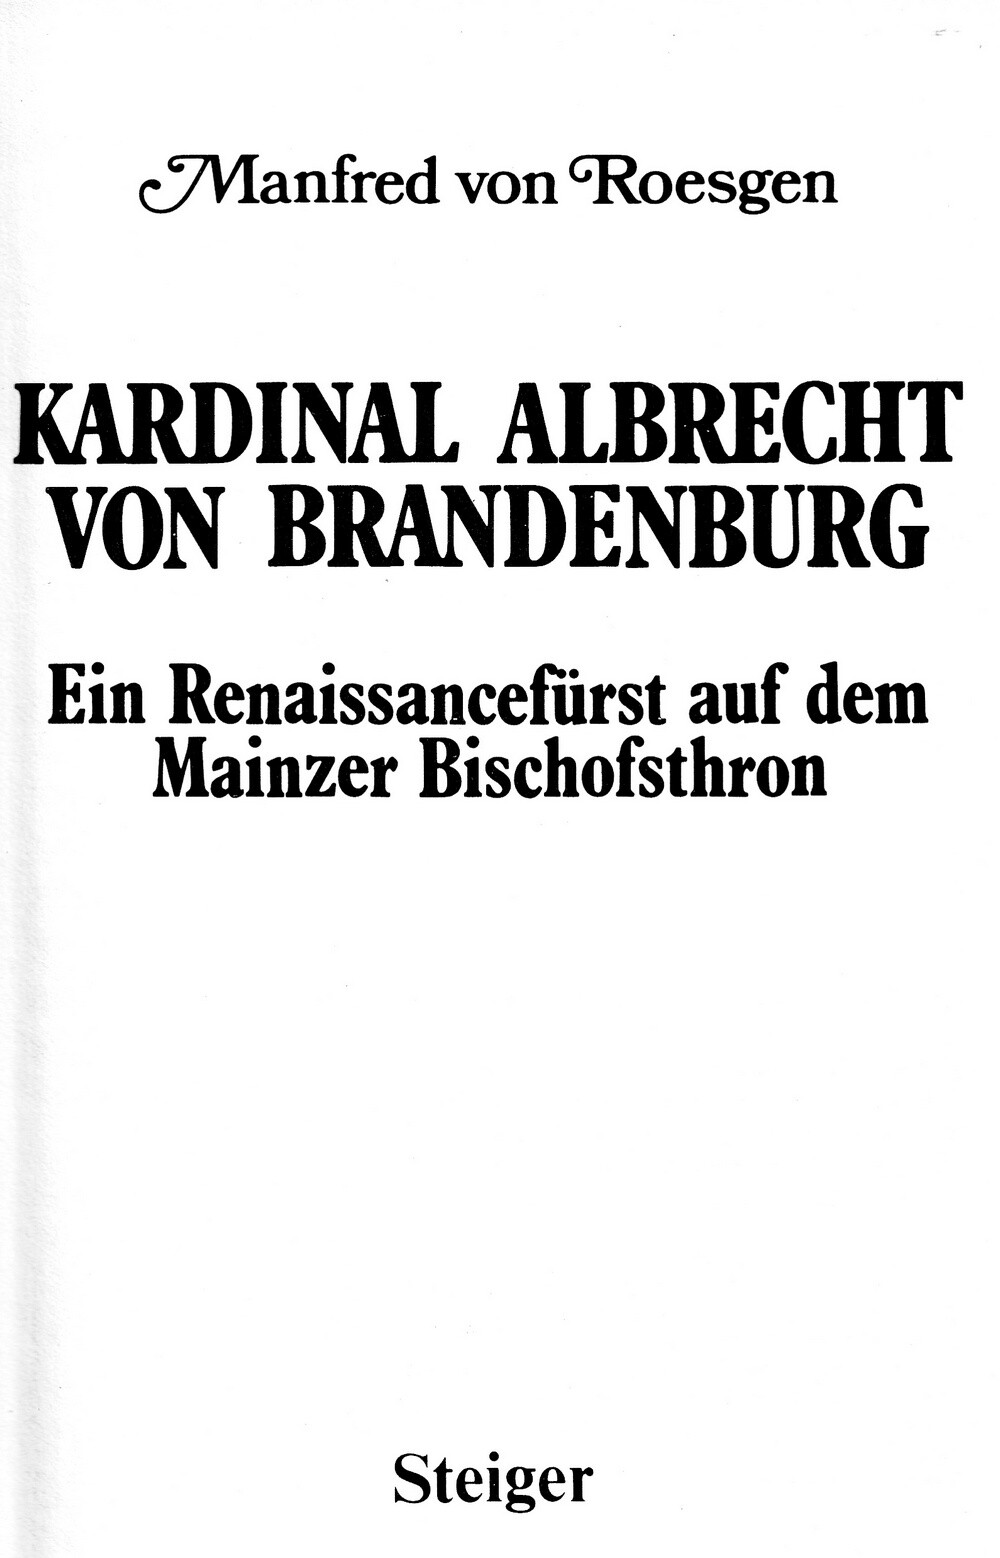 Kardinal Albrecht von Brandenburg (1980) (Kulturverein Guntersblum CC BY-NC-SA)